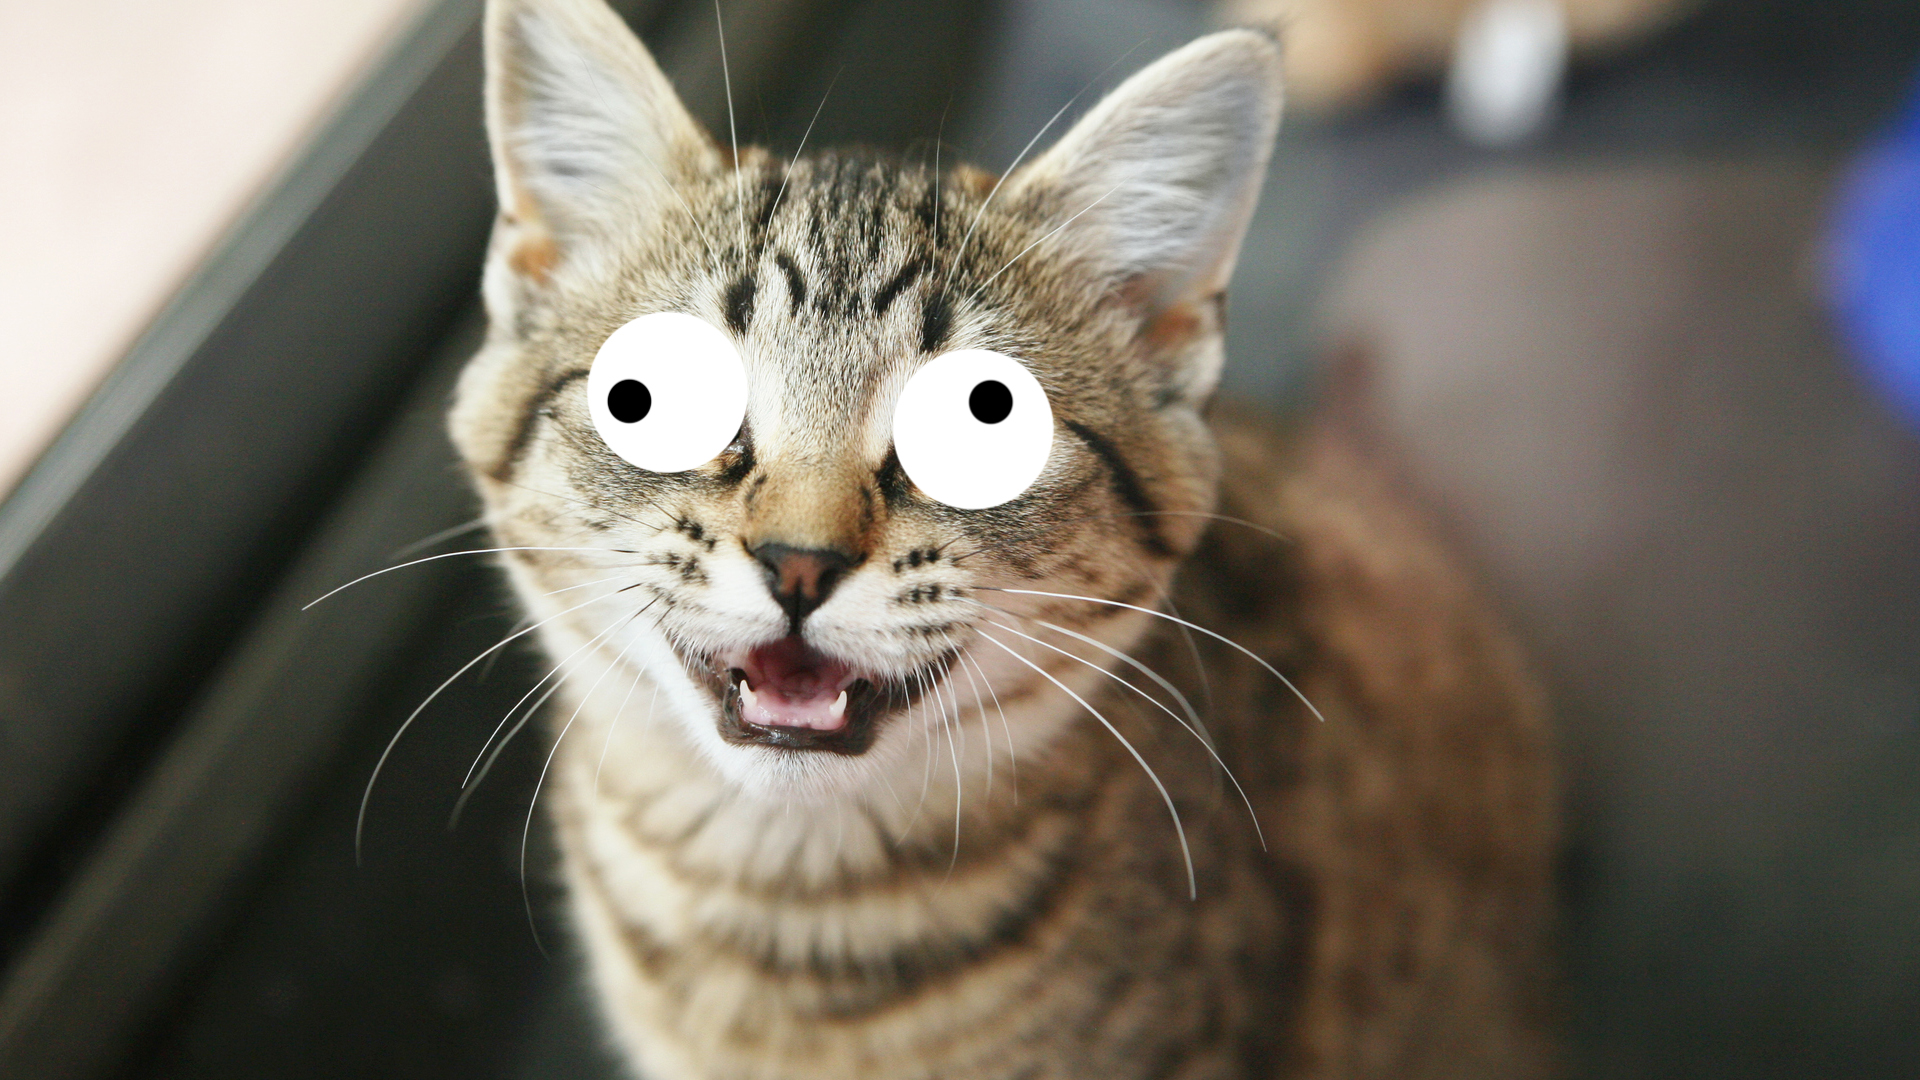 A big-eyed cat